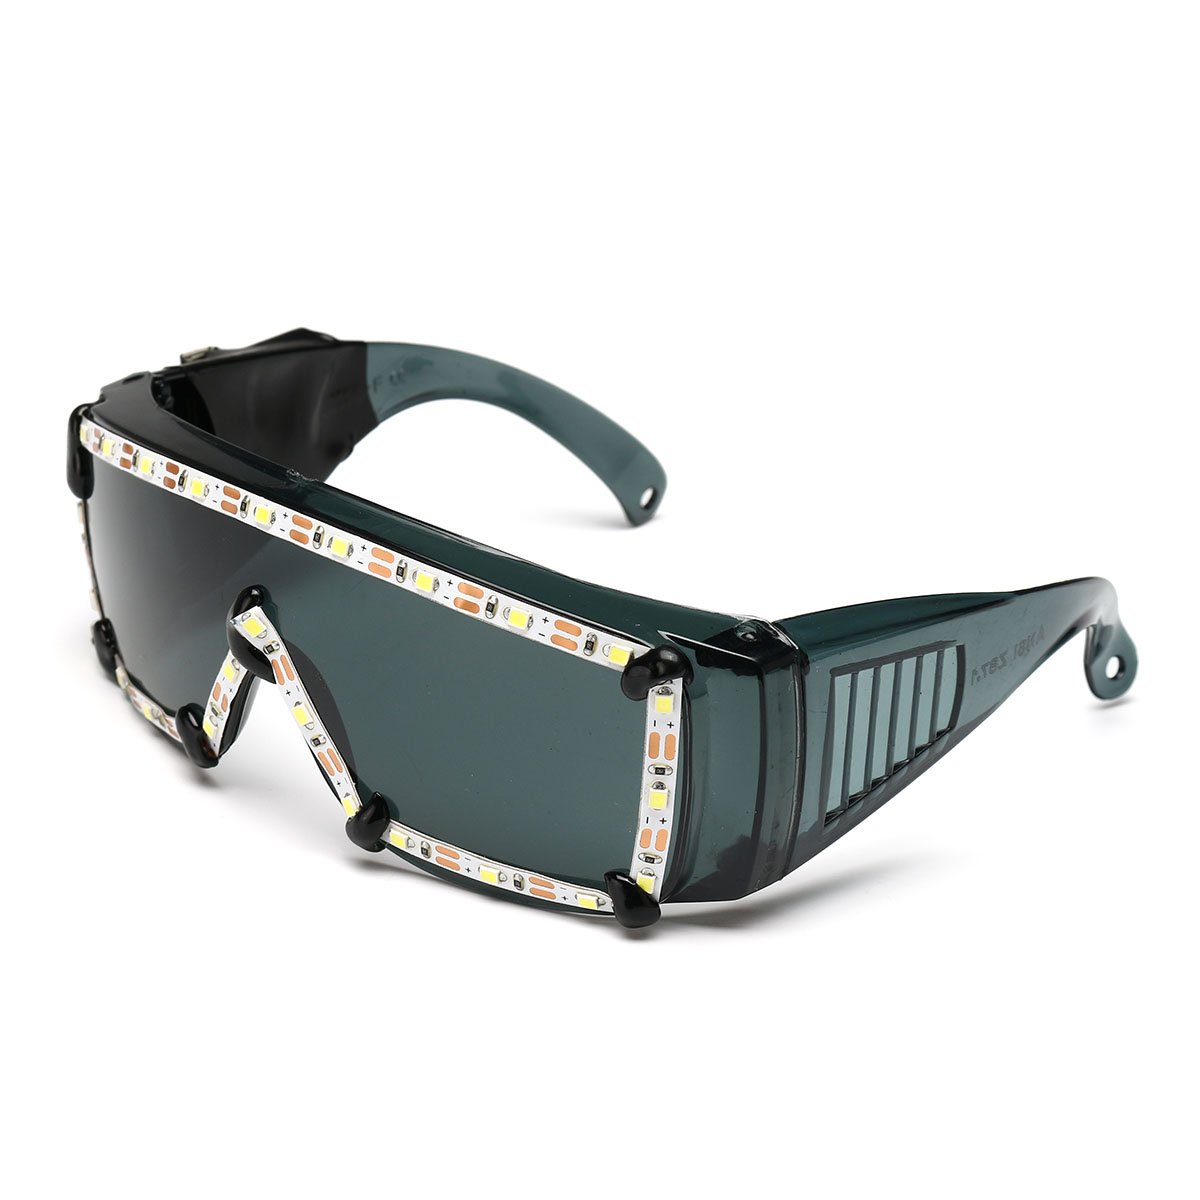 White-LED-Glasses-Light-Up-Glow-Sunglasses-Eyewear-Shades-Nightclub-Party-Decor-1525653-8